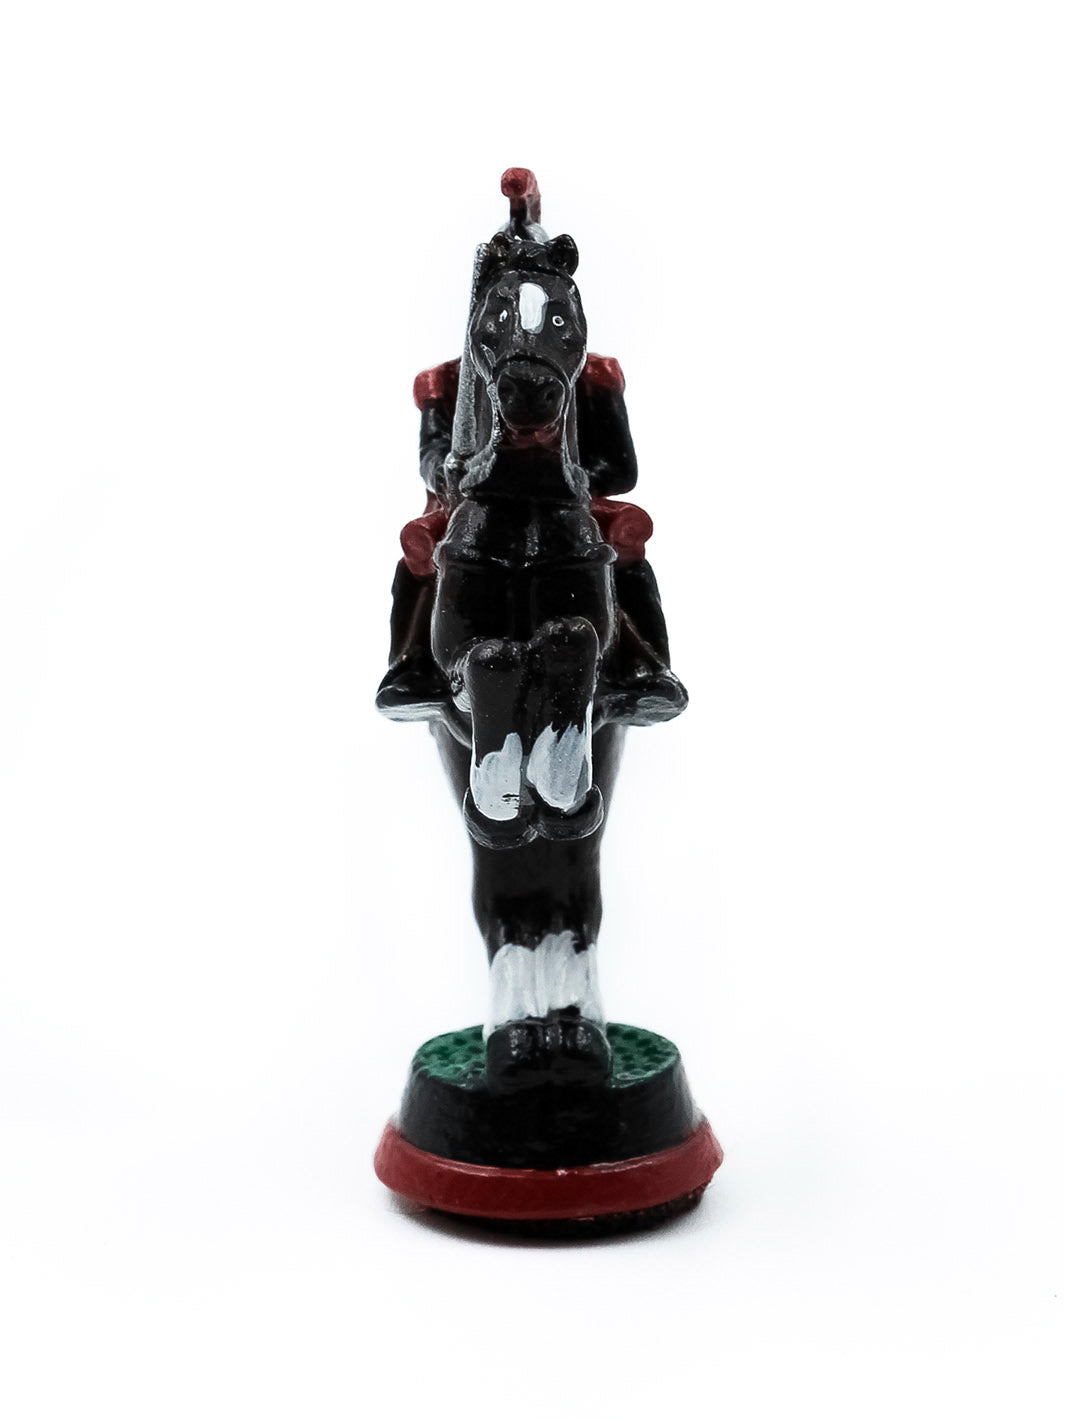 Pièce Cavalier 2 portant un uniforme noir et rouge sur son cheval debout sur ses pattes arrieres vue de face